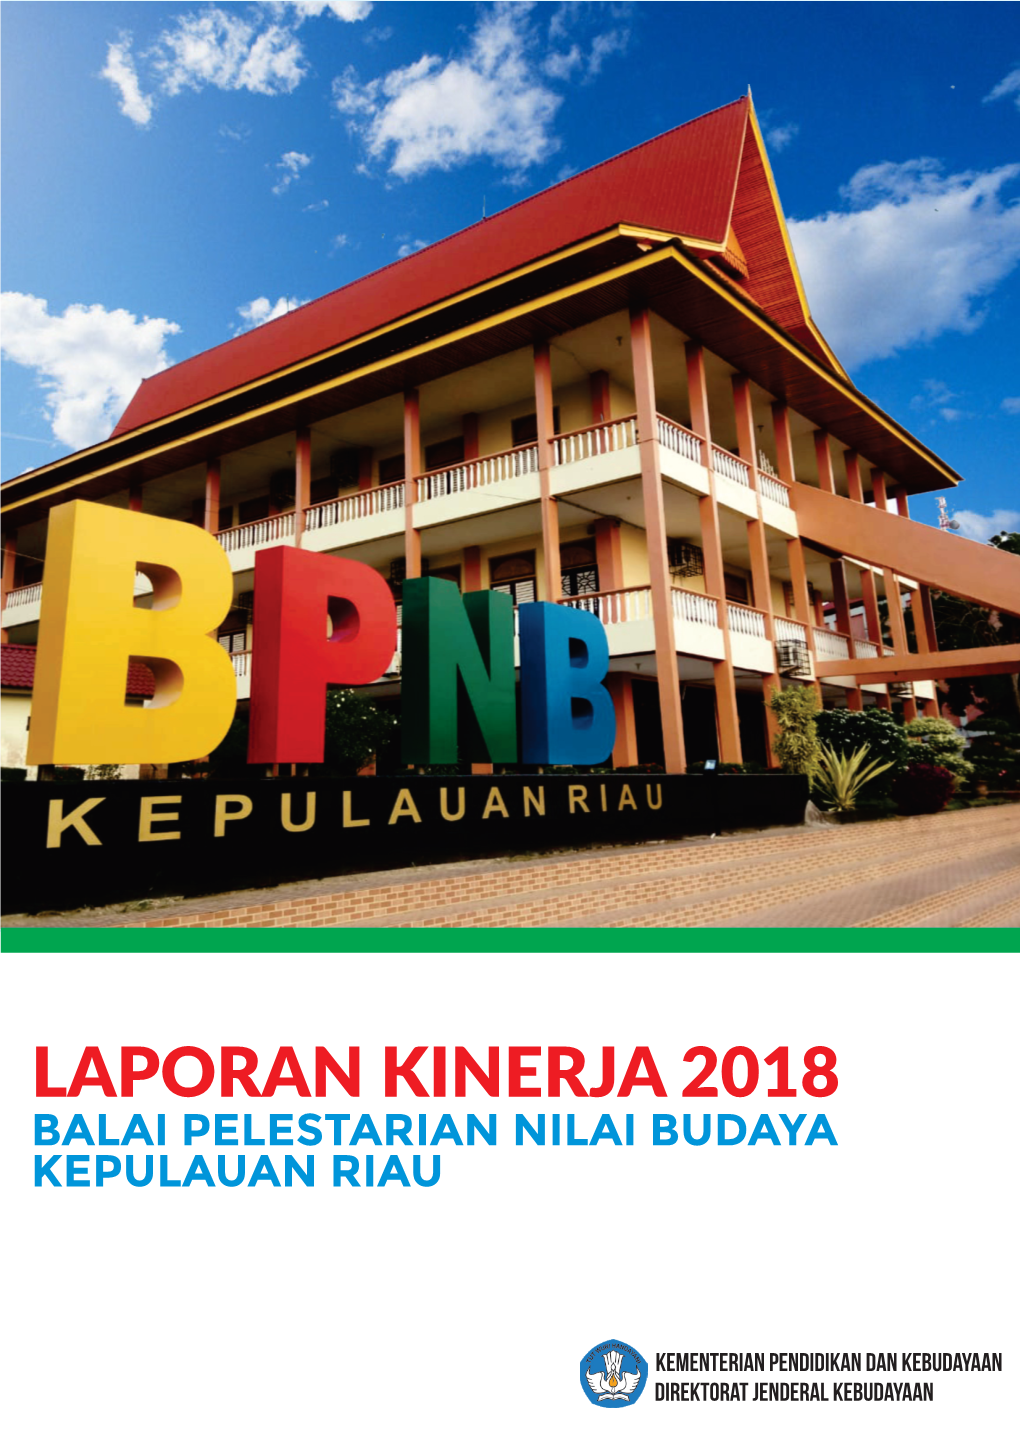 Laporan Kinerja 2018 Balai Pelestarian Nilai Budaya Kepulauan Riau